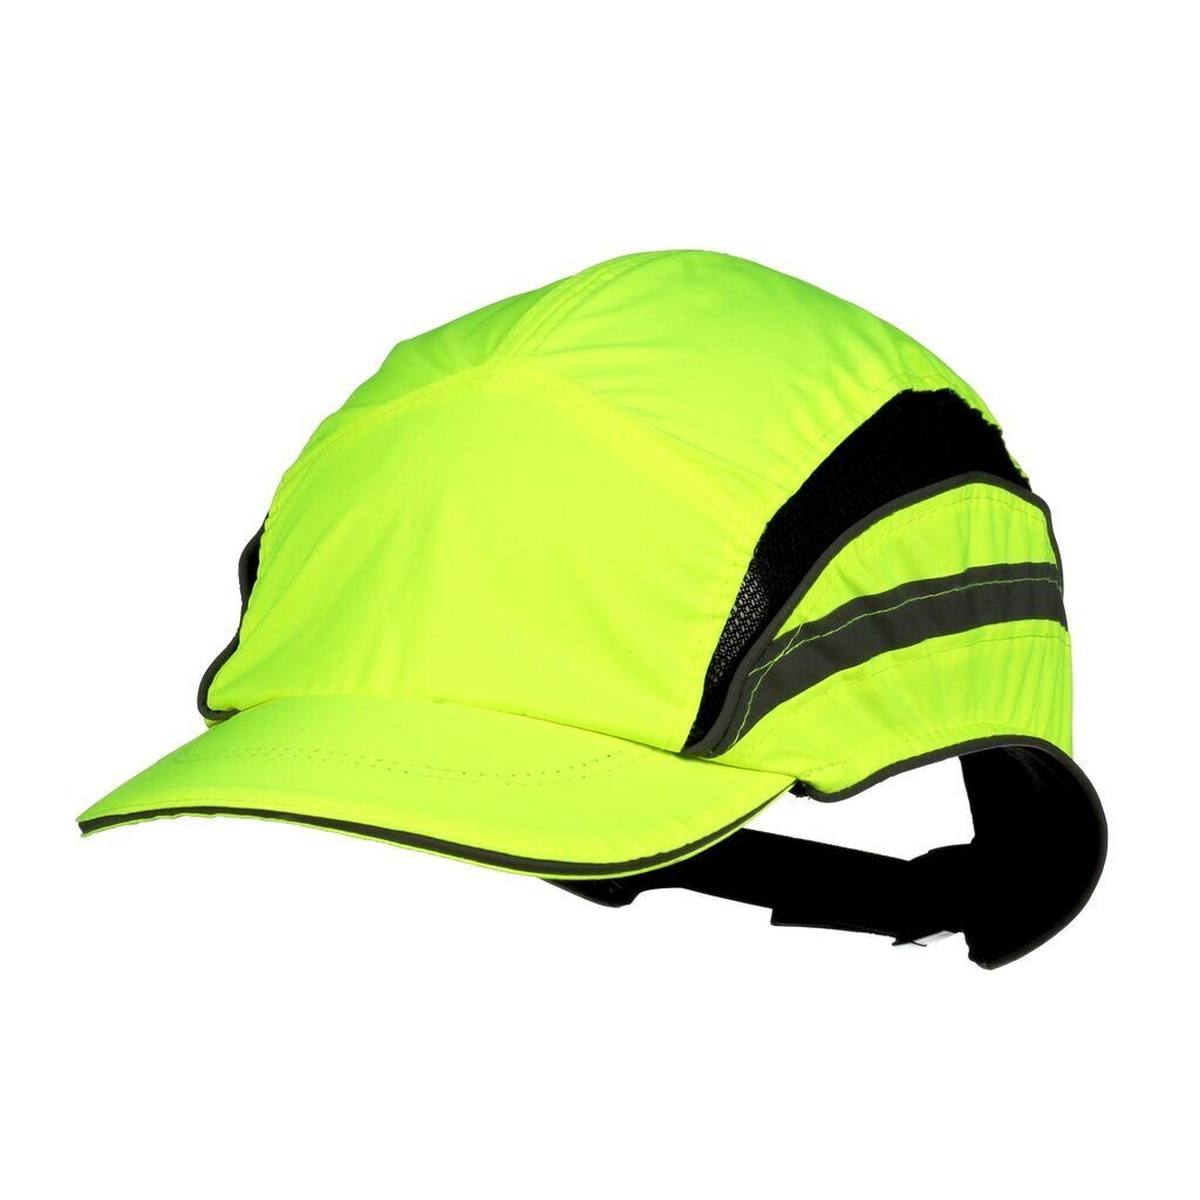 3M Scott First Base 3 Classic - berretto a botta in colore giallo segnale - visiera accorciata 55 mm, EN812